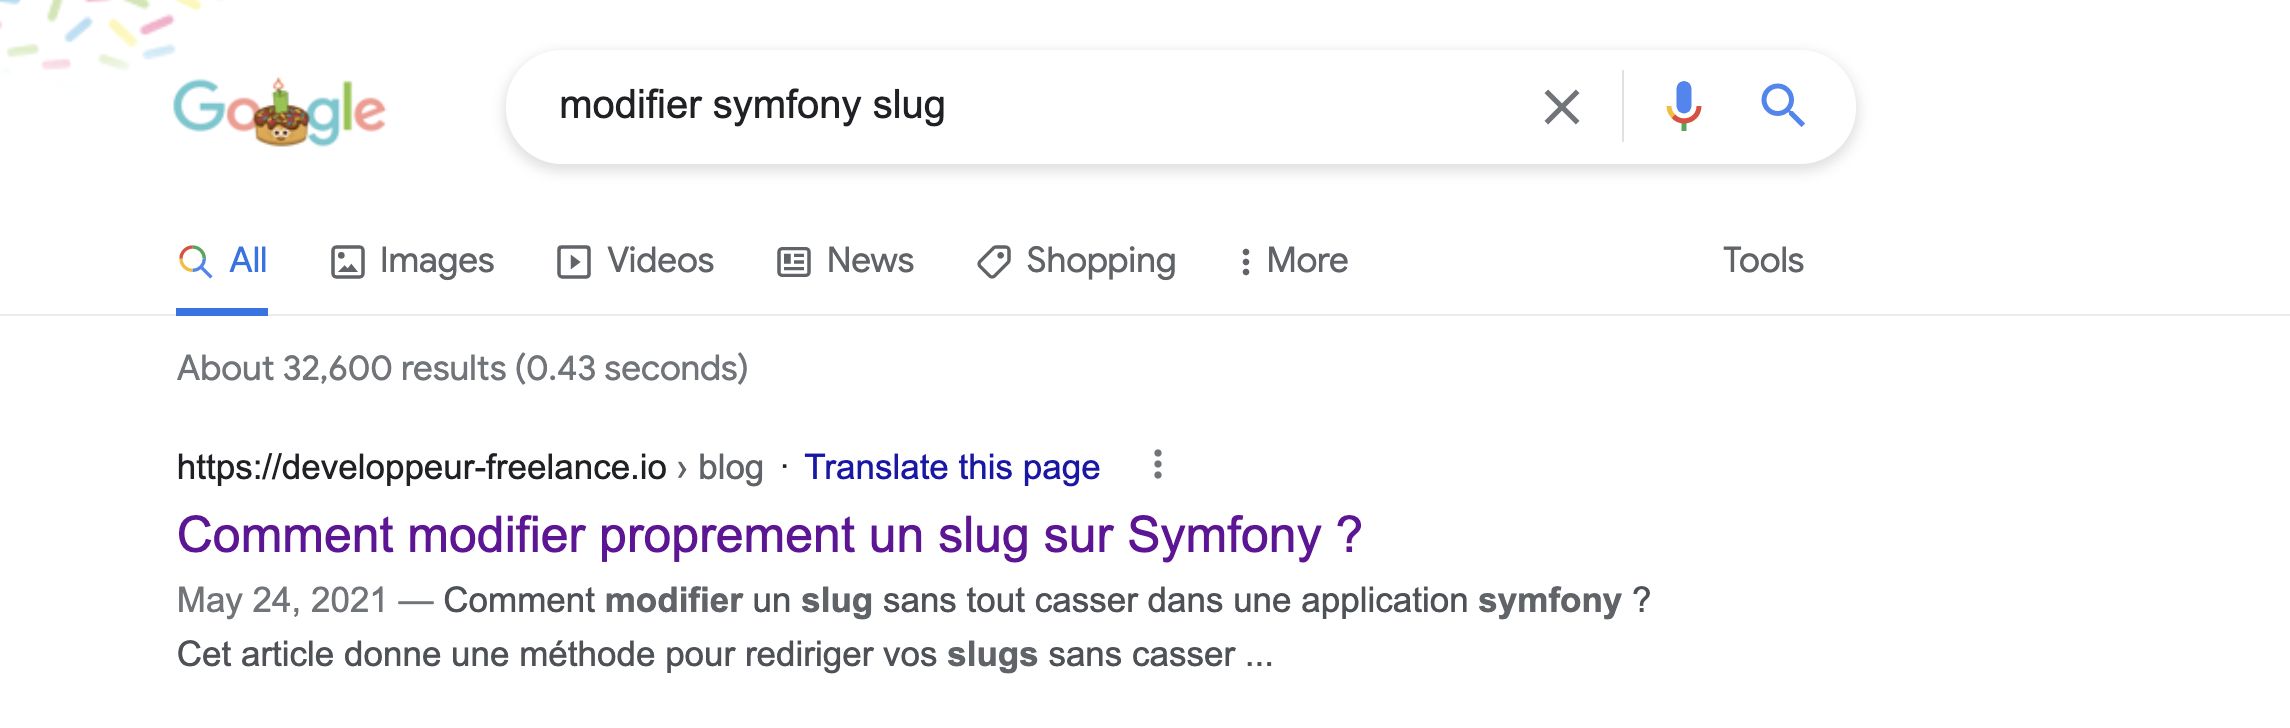 Recherche Google - Comment modifier un slug Symfony ?